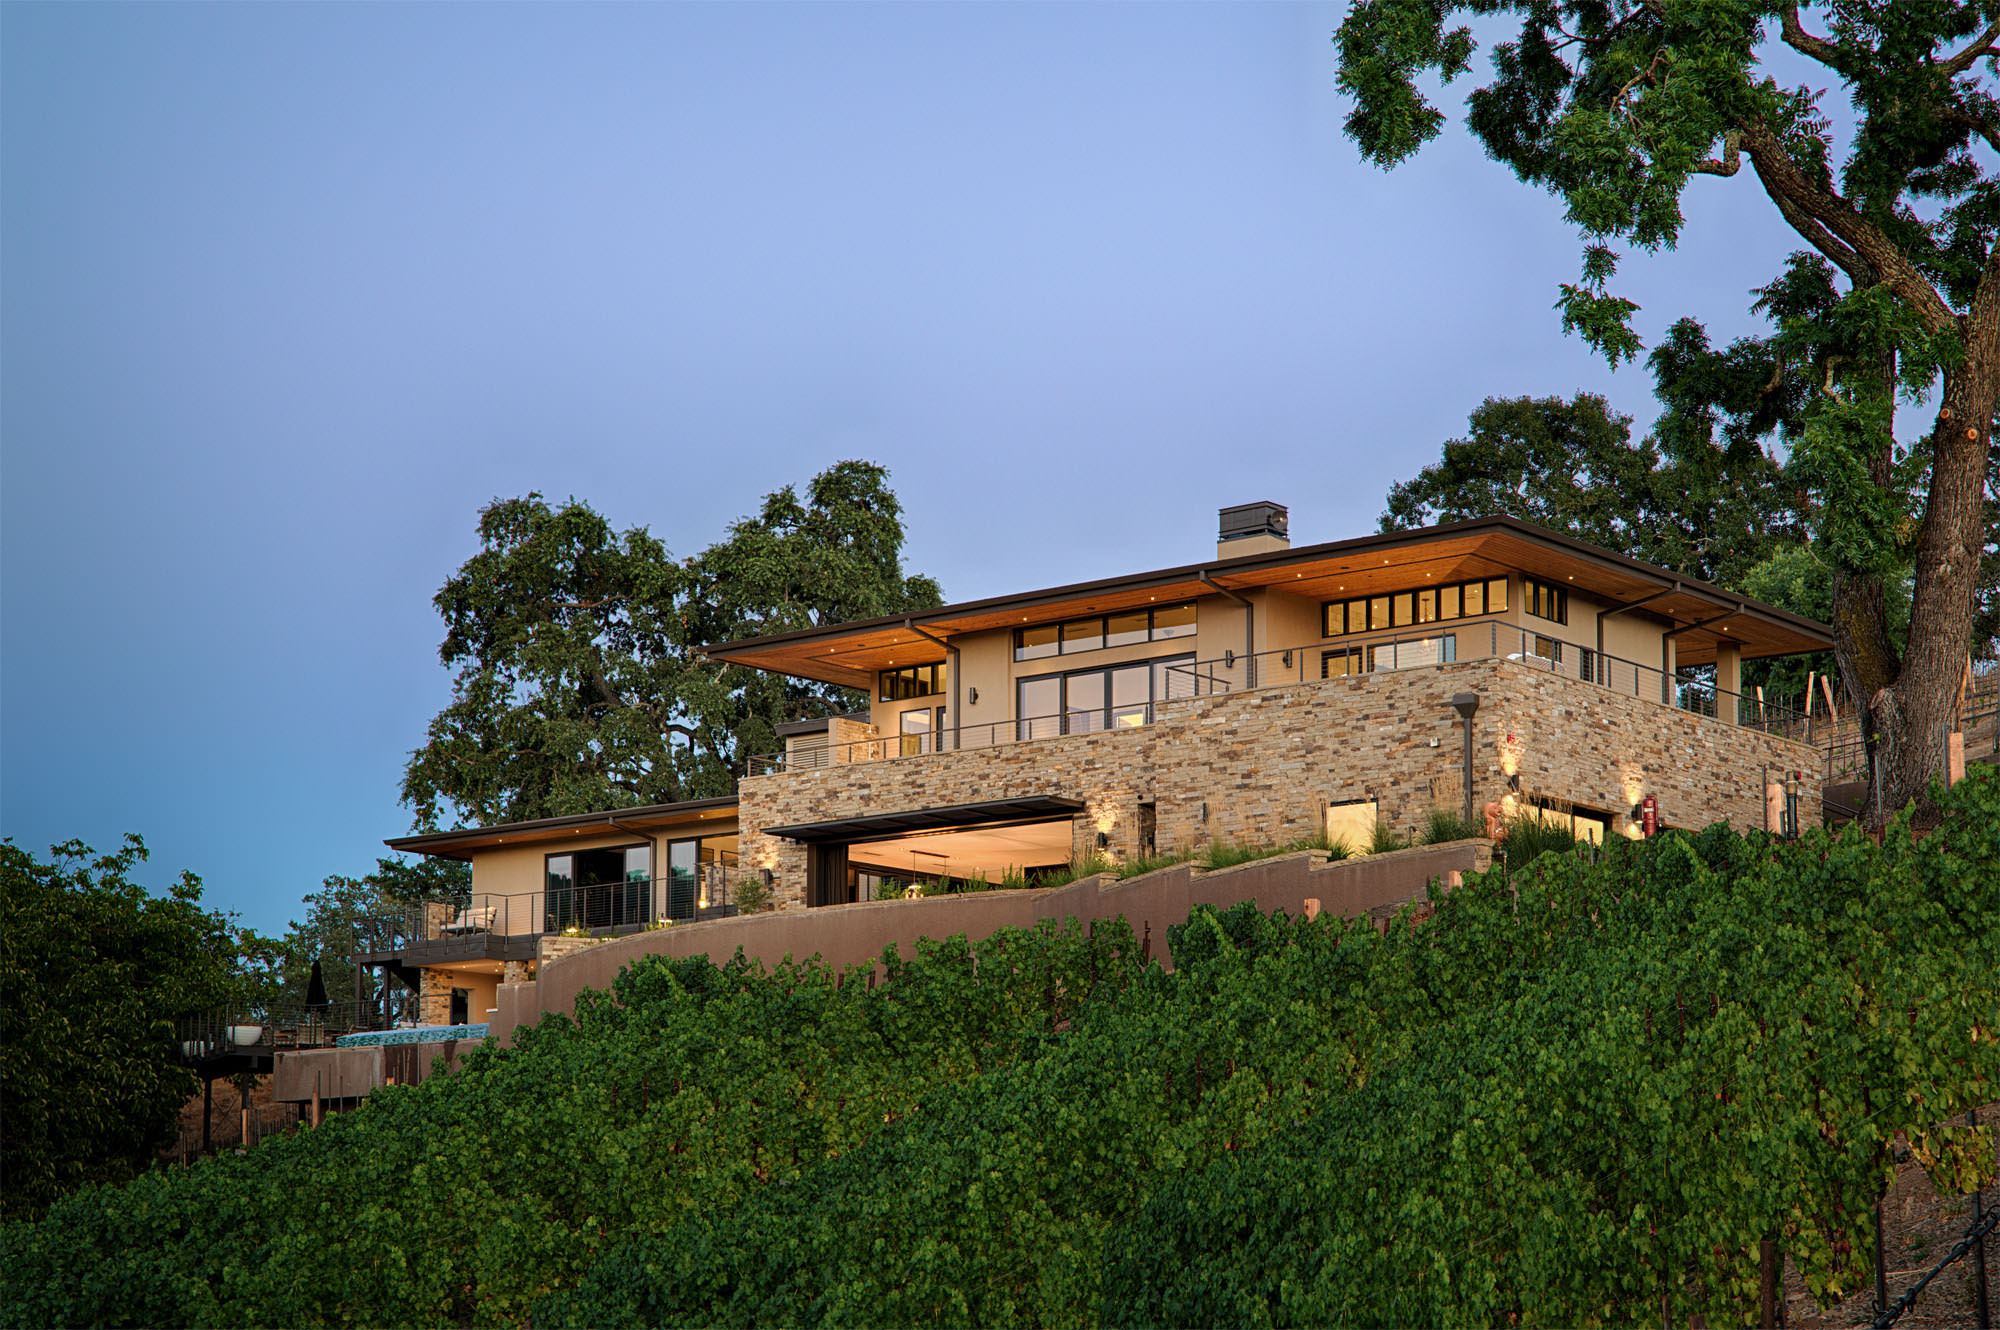 Oakville hillside residence placed in vineyards